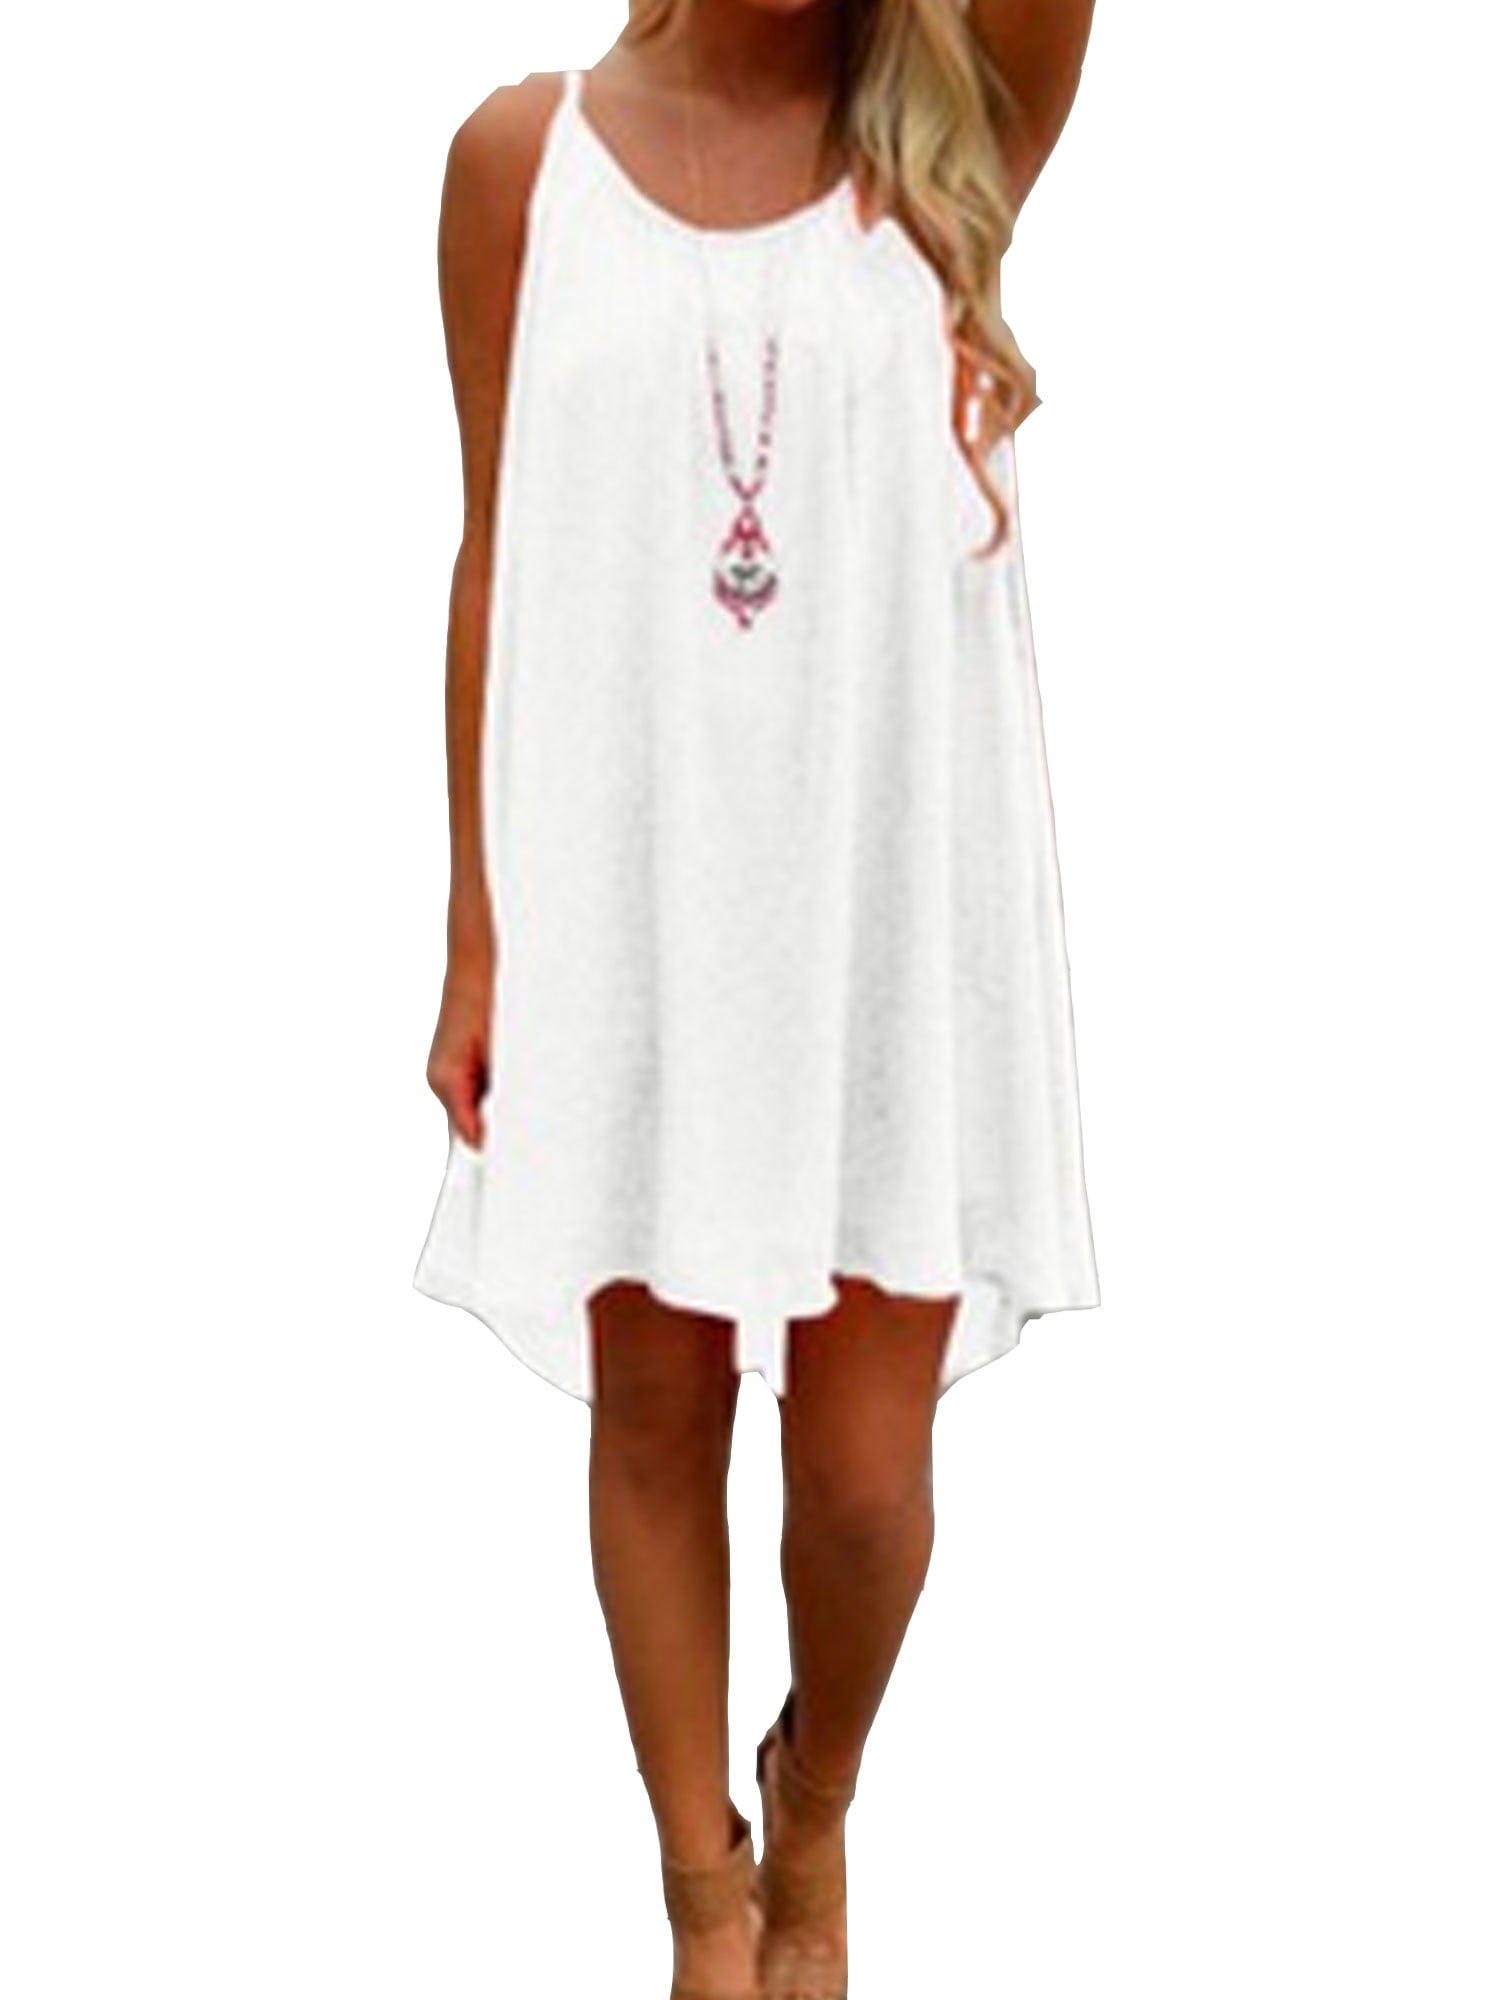 walmart white dress